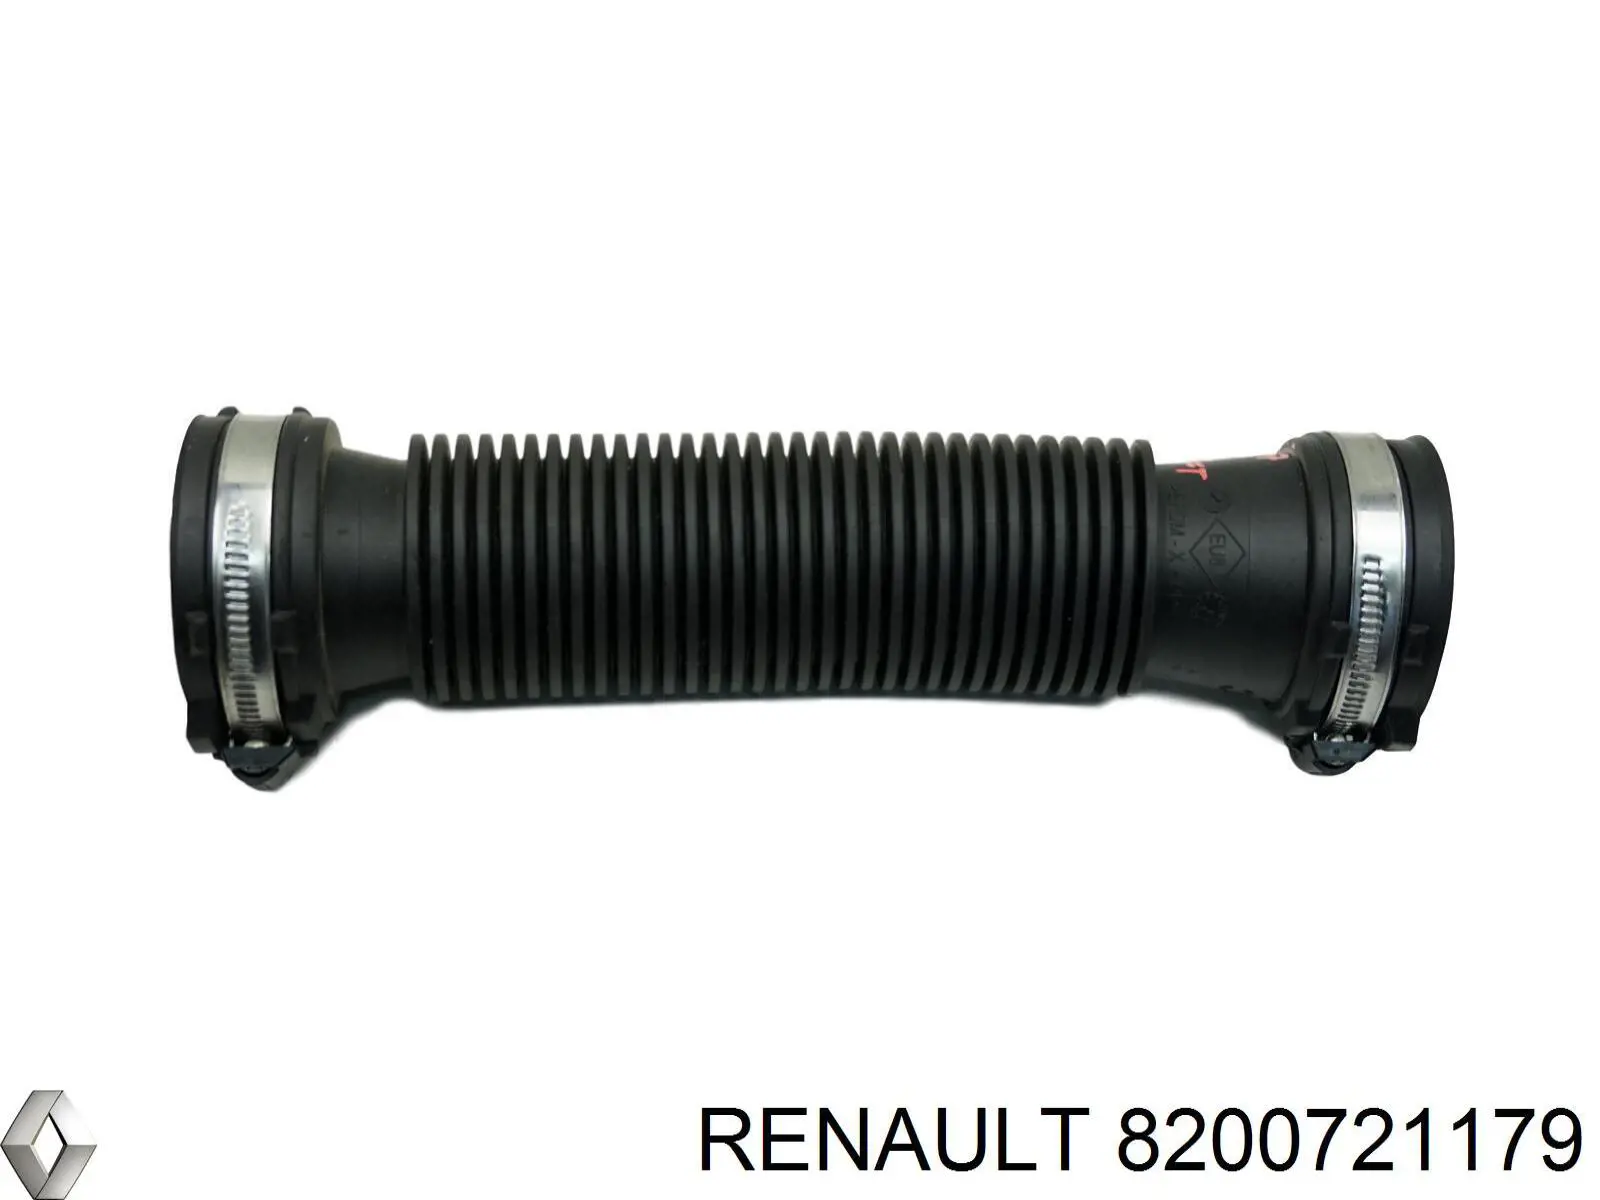 8200721179 Renault (RVI) tubo flexible de aspiración, salida del filtro de aire